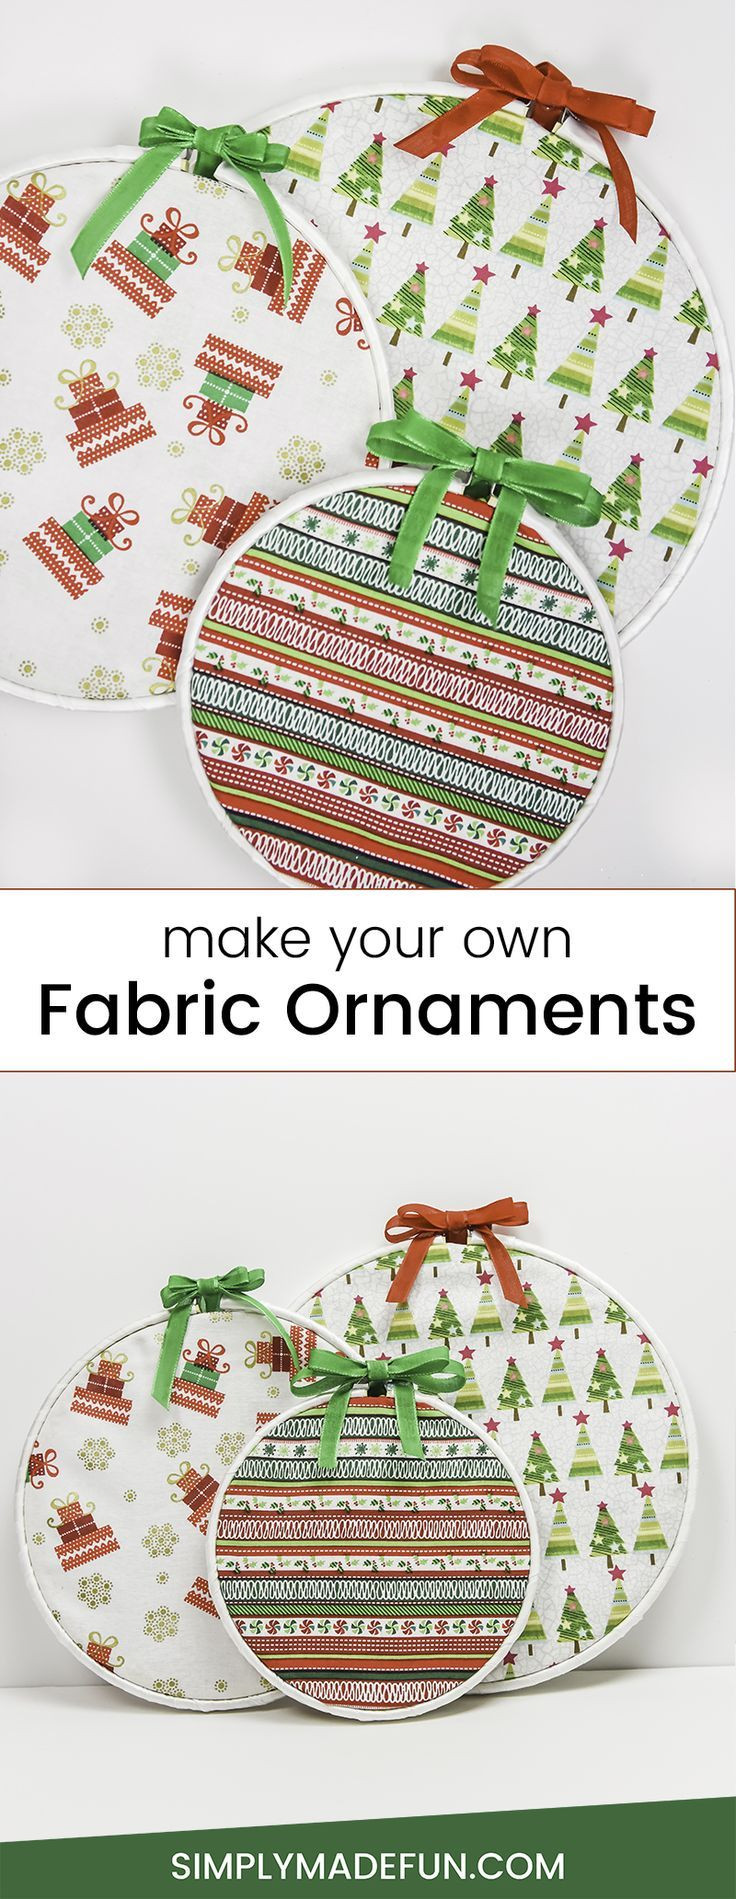 DIY Kid Friendly Christmas Ornaments
 DIY Fabric Ornaments